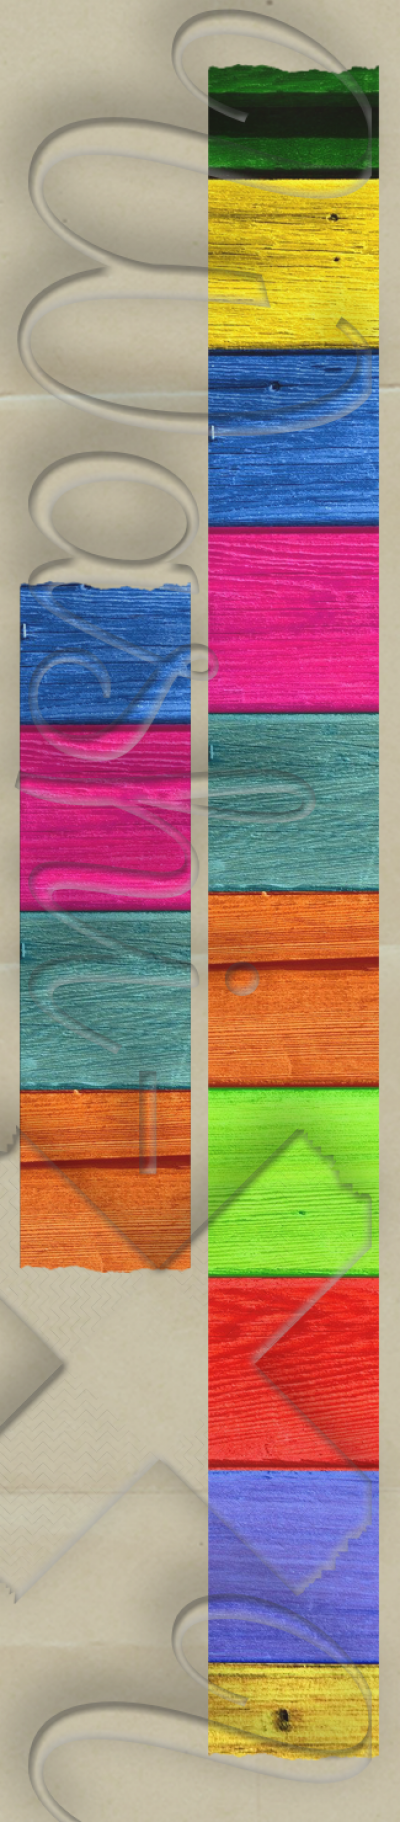 Washi-X Washi Tape Colorful wood deck patterned washi tape